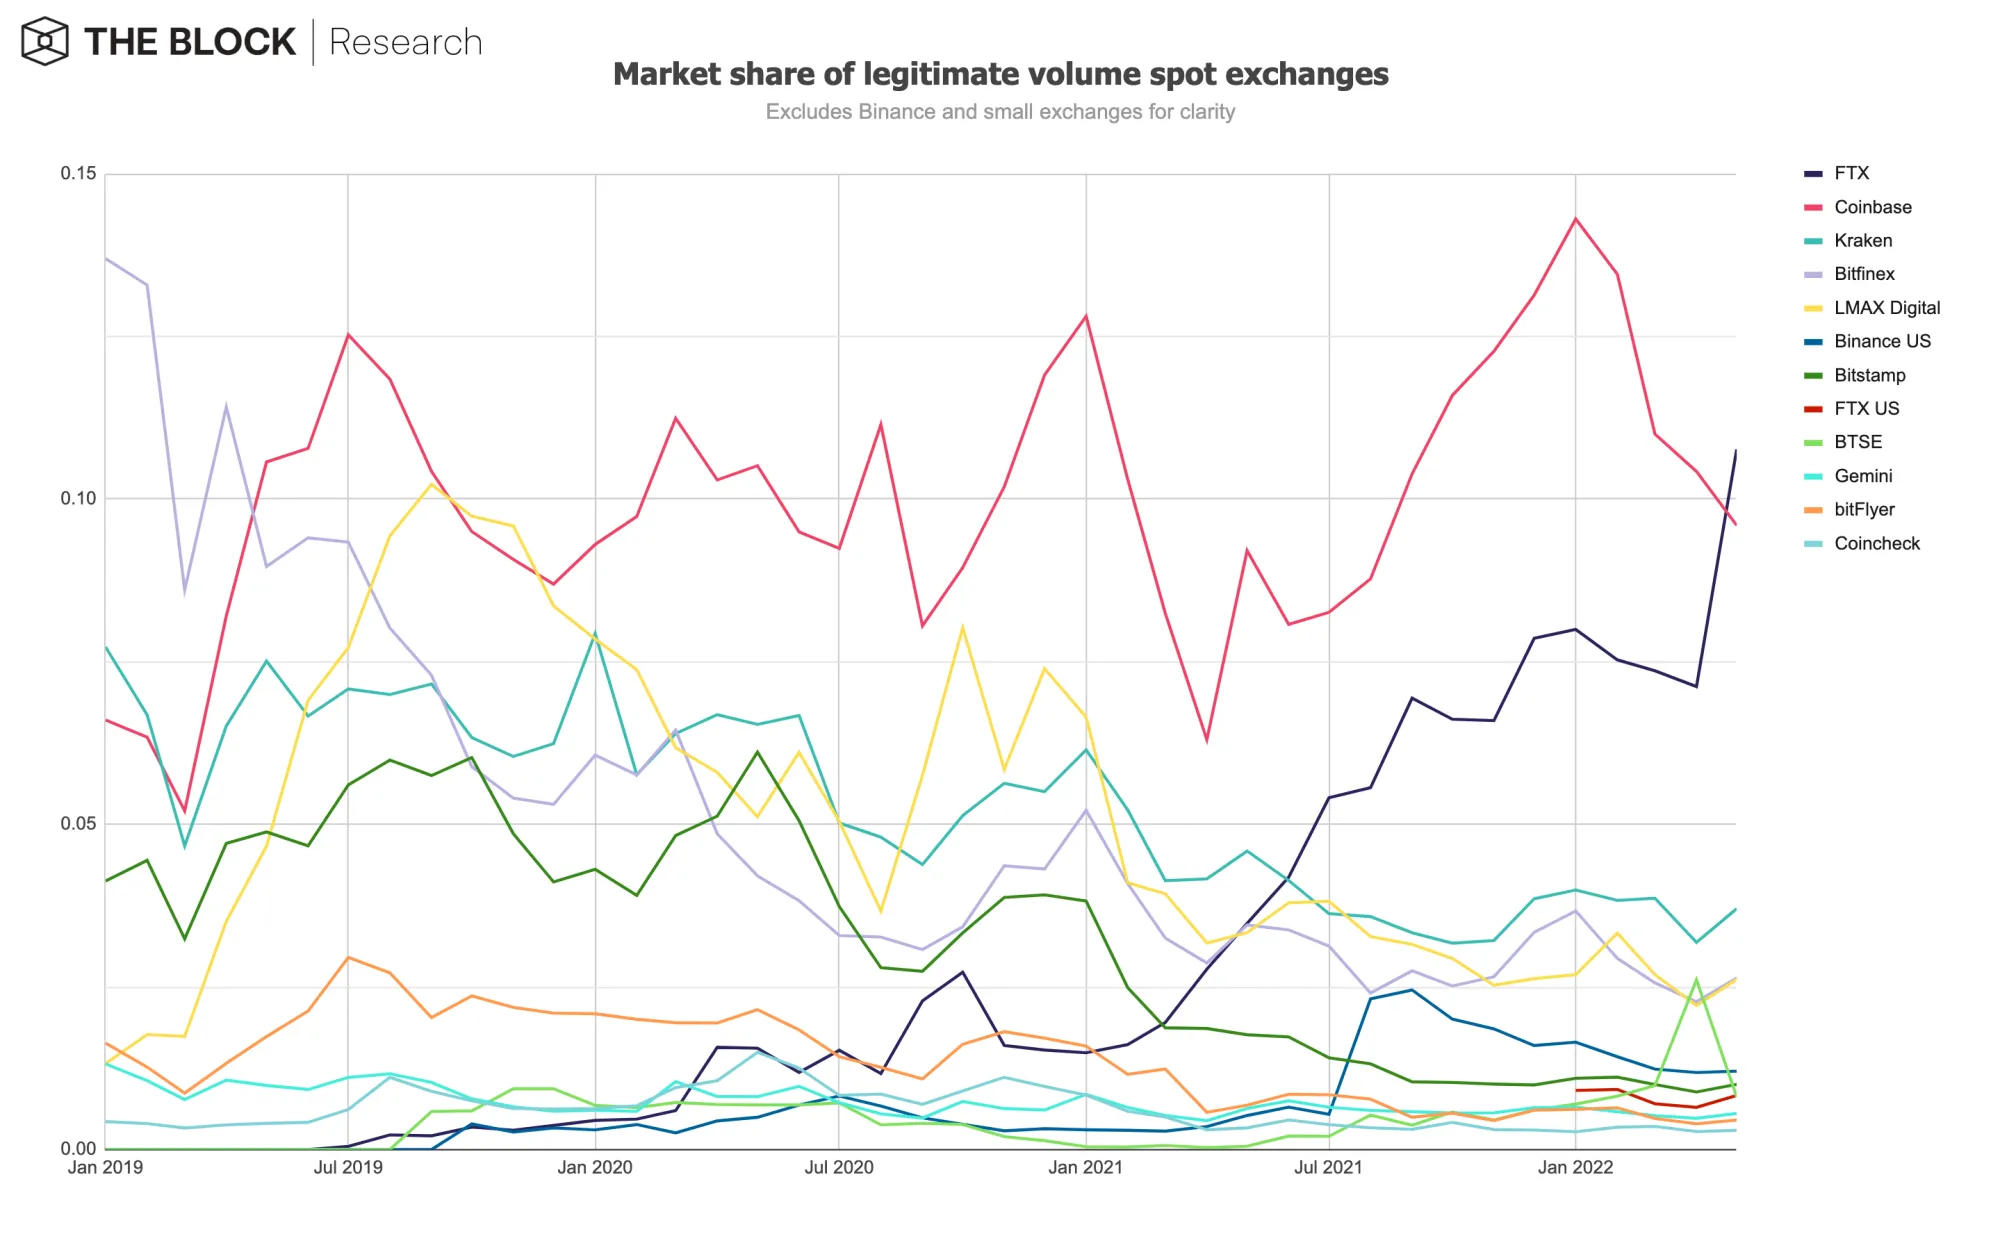 Centralized exchange volume market share, excluding major leader Binance. Source: The Block